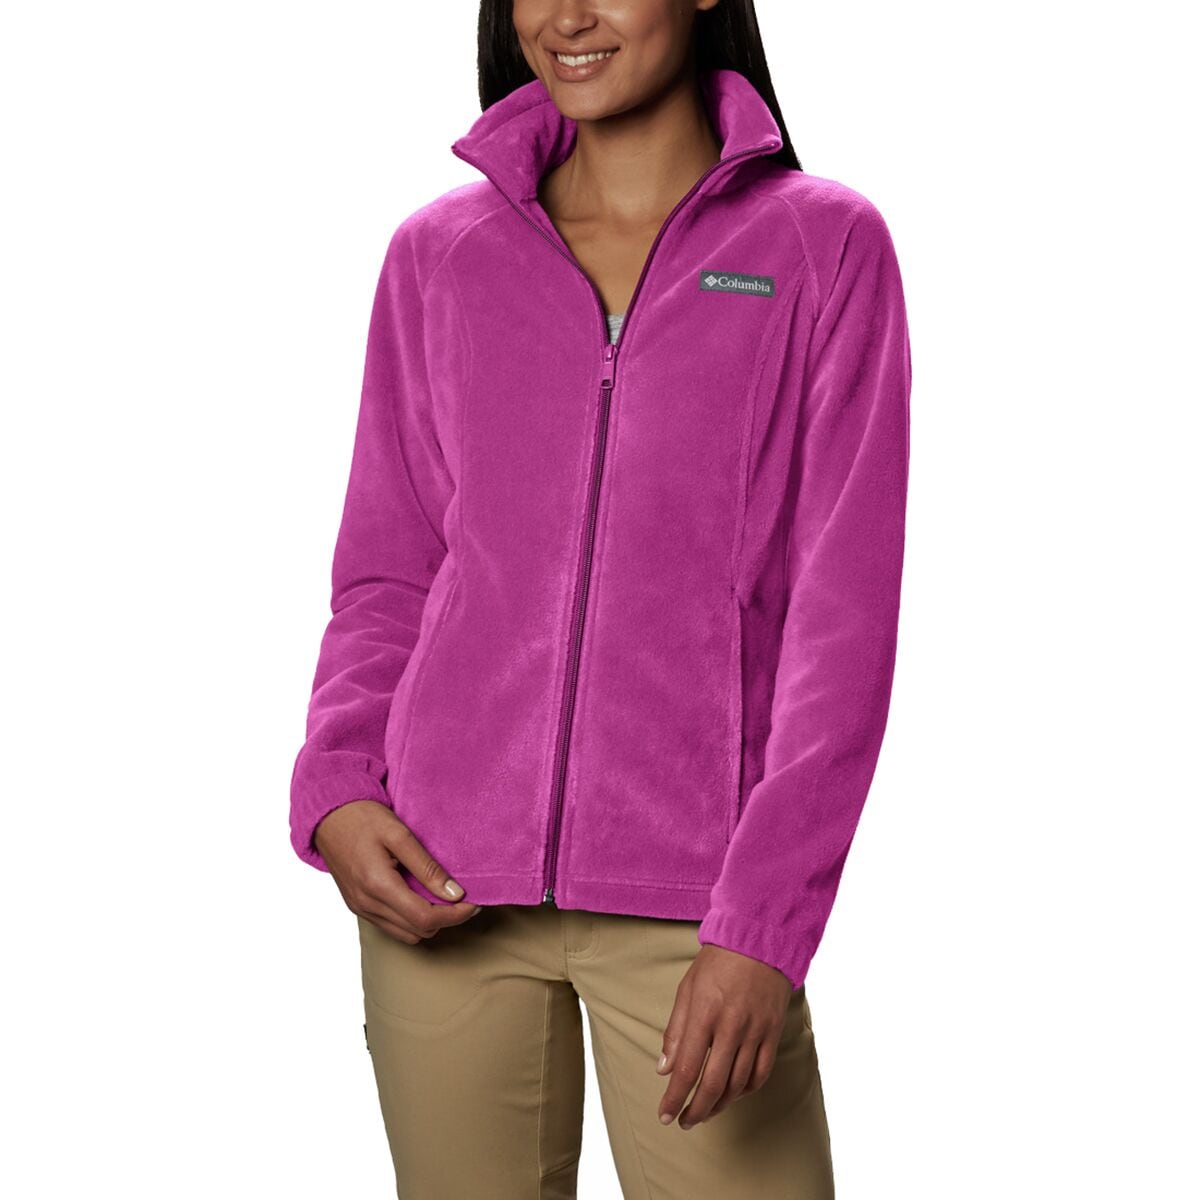 Benton Springs Full-Zip Fleece Jacket - Women